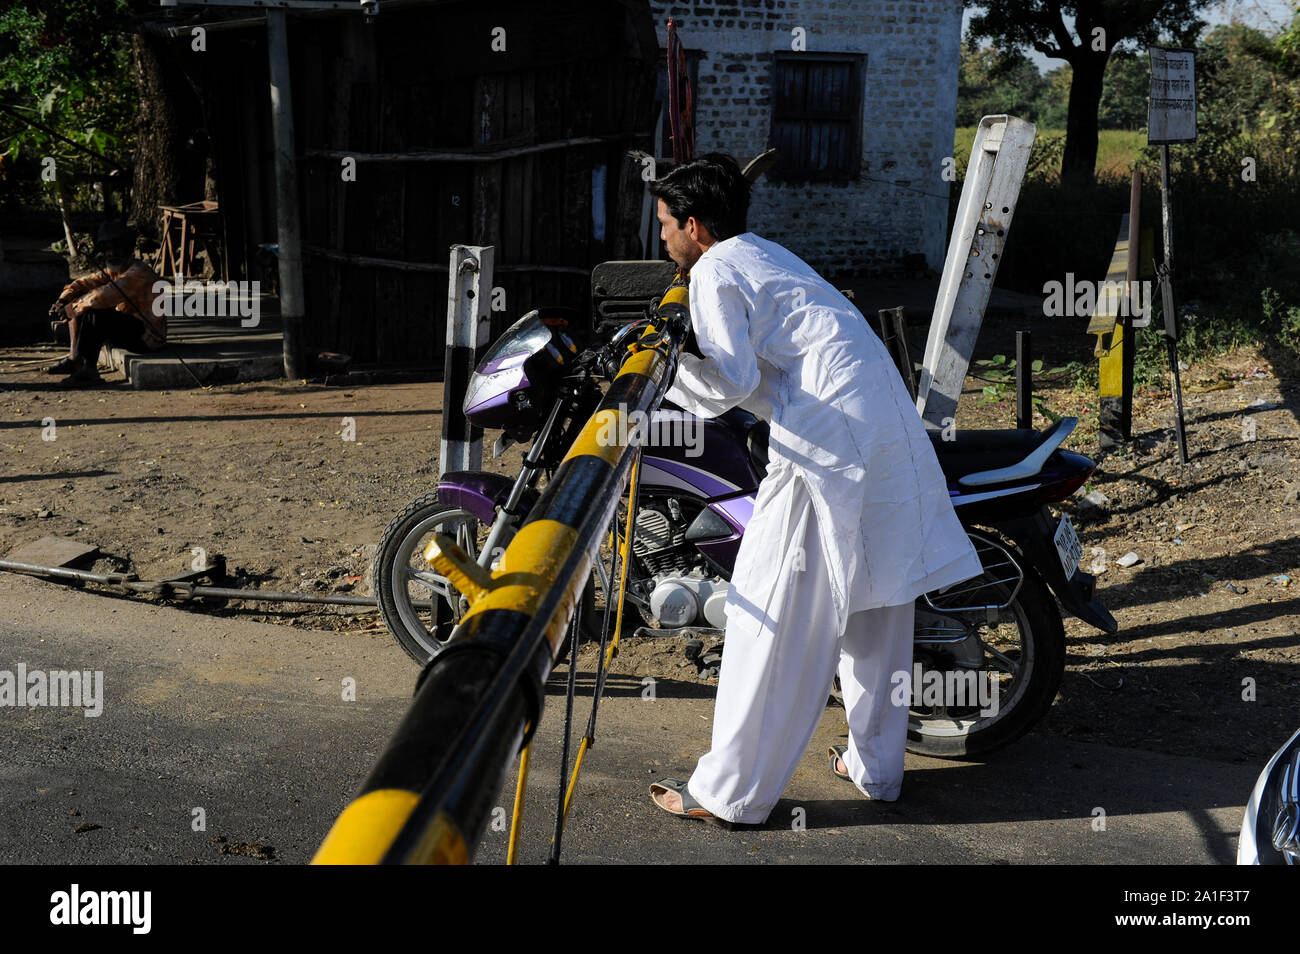 Indien, Madhya Pradesh, Nimad region, Khargone, Motorrad fahrer verletzen Verkehrsregeln während ein Bahnübergang Kreuzung mit geschlossenen Schranken Stockfoto